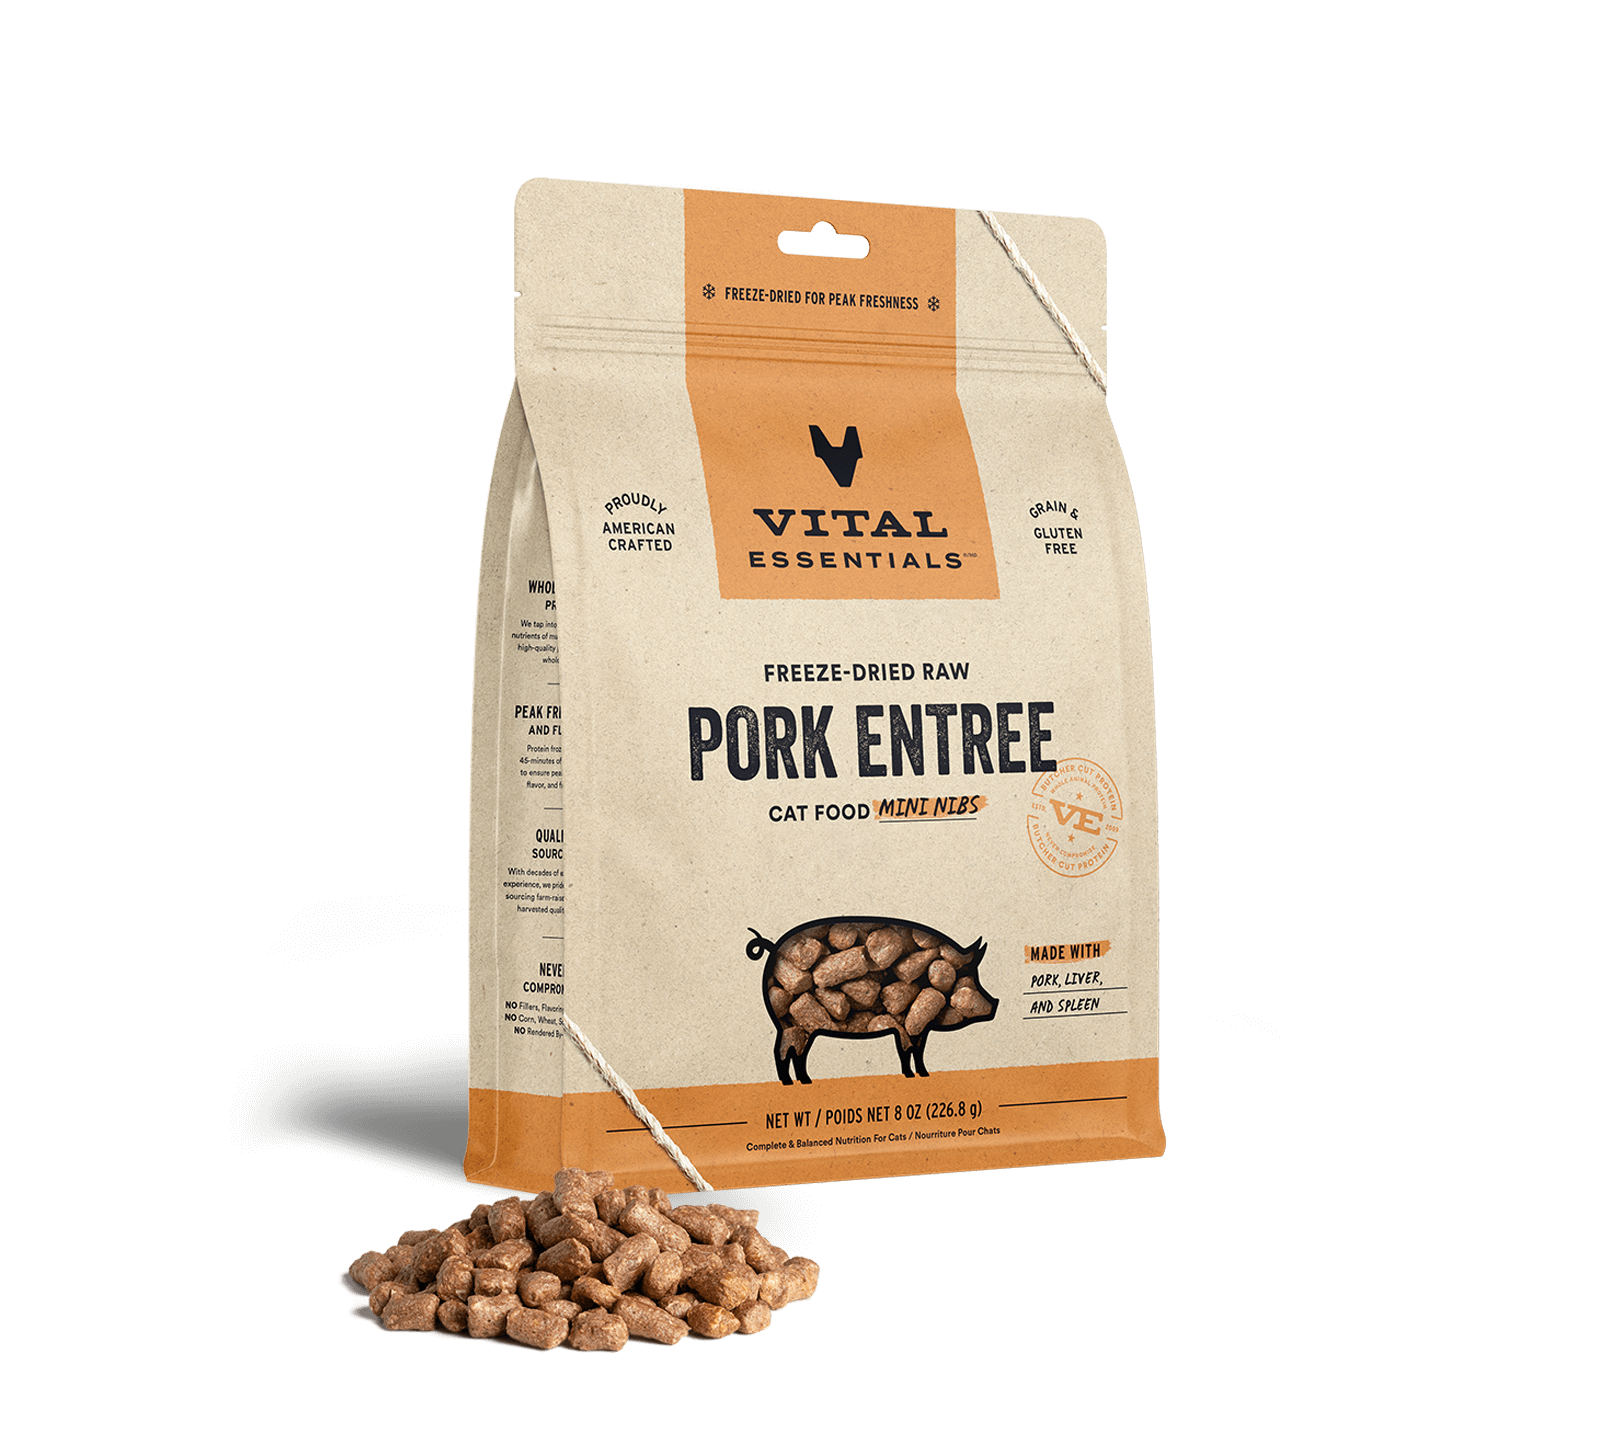 Vital Essentials Freeze-Dried Raw Pork Entree Cat Food Mini Nibs, 8 oz - Health/First Aid